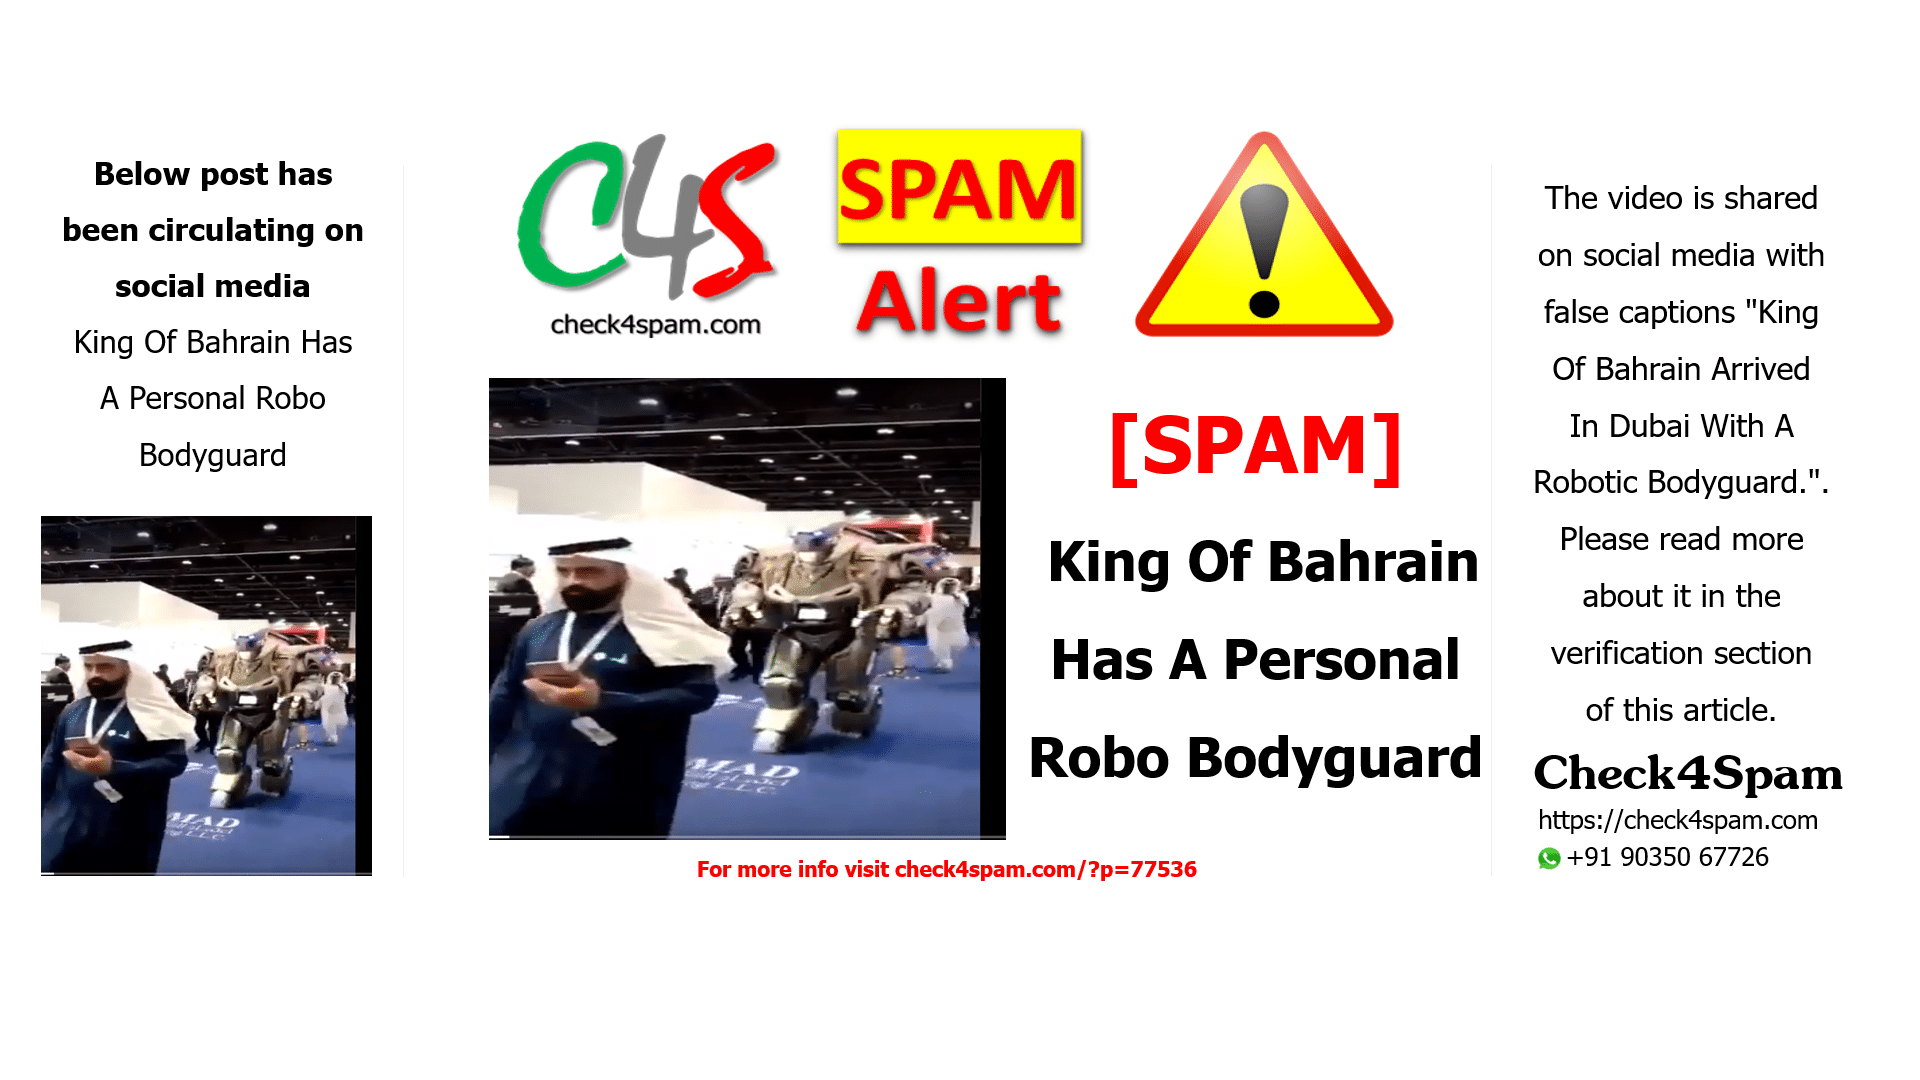 King Of Bahrain Has A Personal Robo Bodyguard